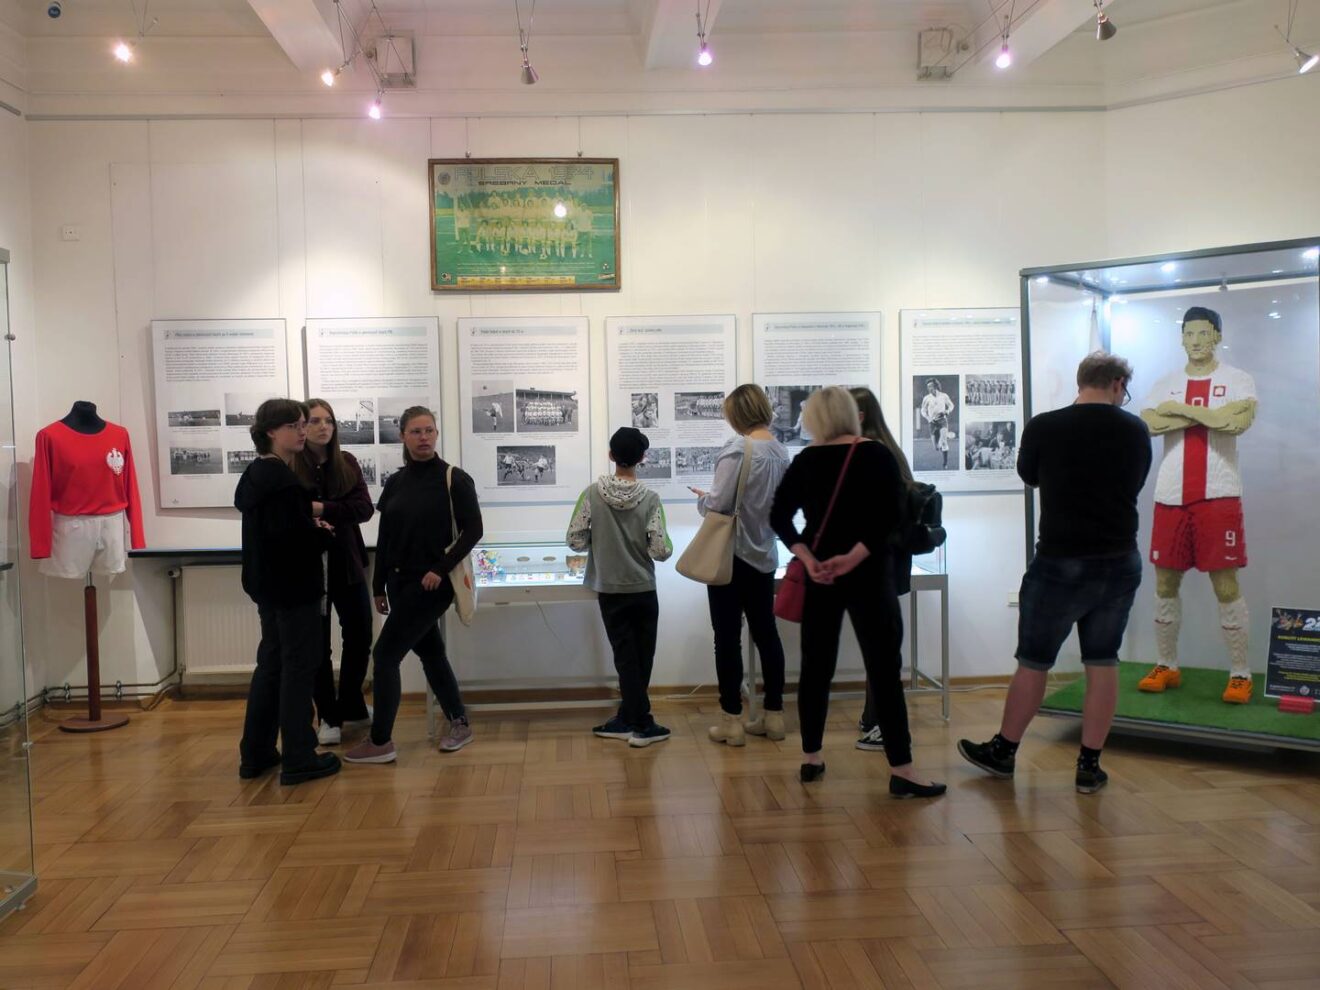 Grupa osób zwiedzająca wystawę o piłce nożnej.